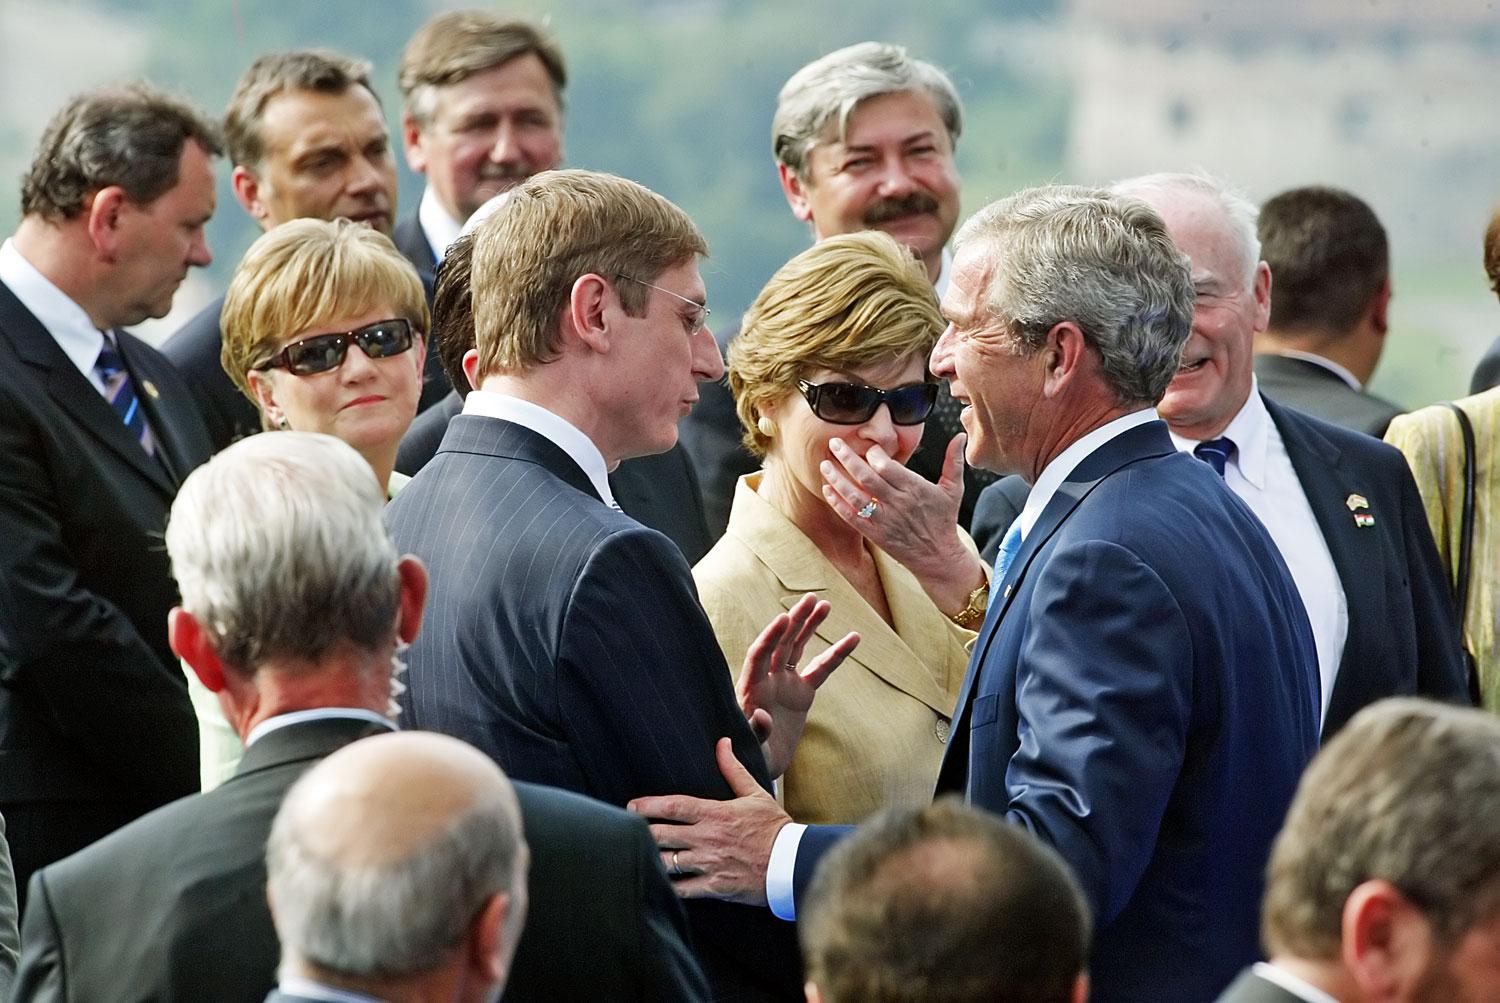 Ifj. George Bush akkori elnök 2006-ban  ellátogatott Budapestre, ahol Gyurcsány Ferenc és Orbán Viktor (fölső sor, balról a második) előtt barátnak nevezte Magyarországot. Orbánt már nem látják szívesen Washingtonban